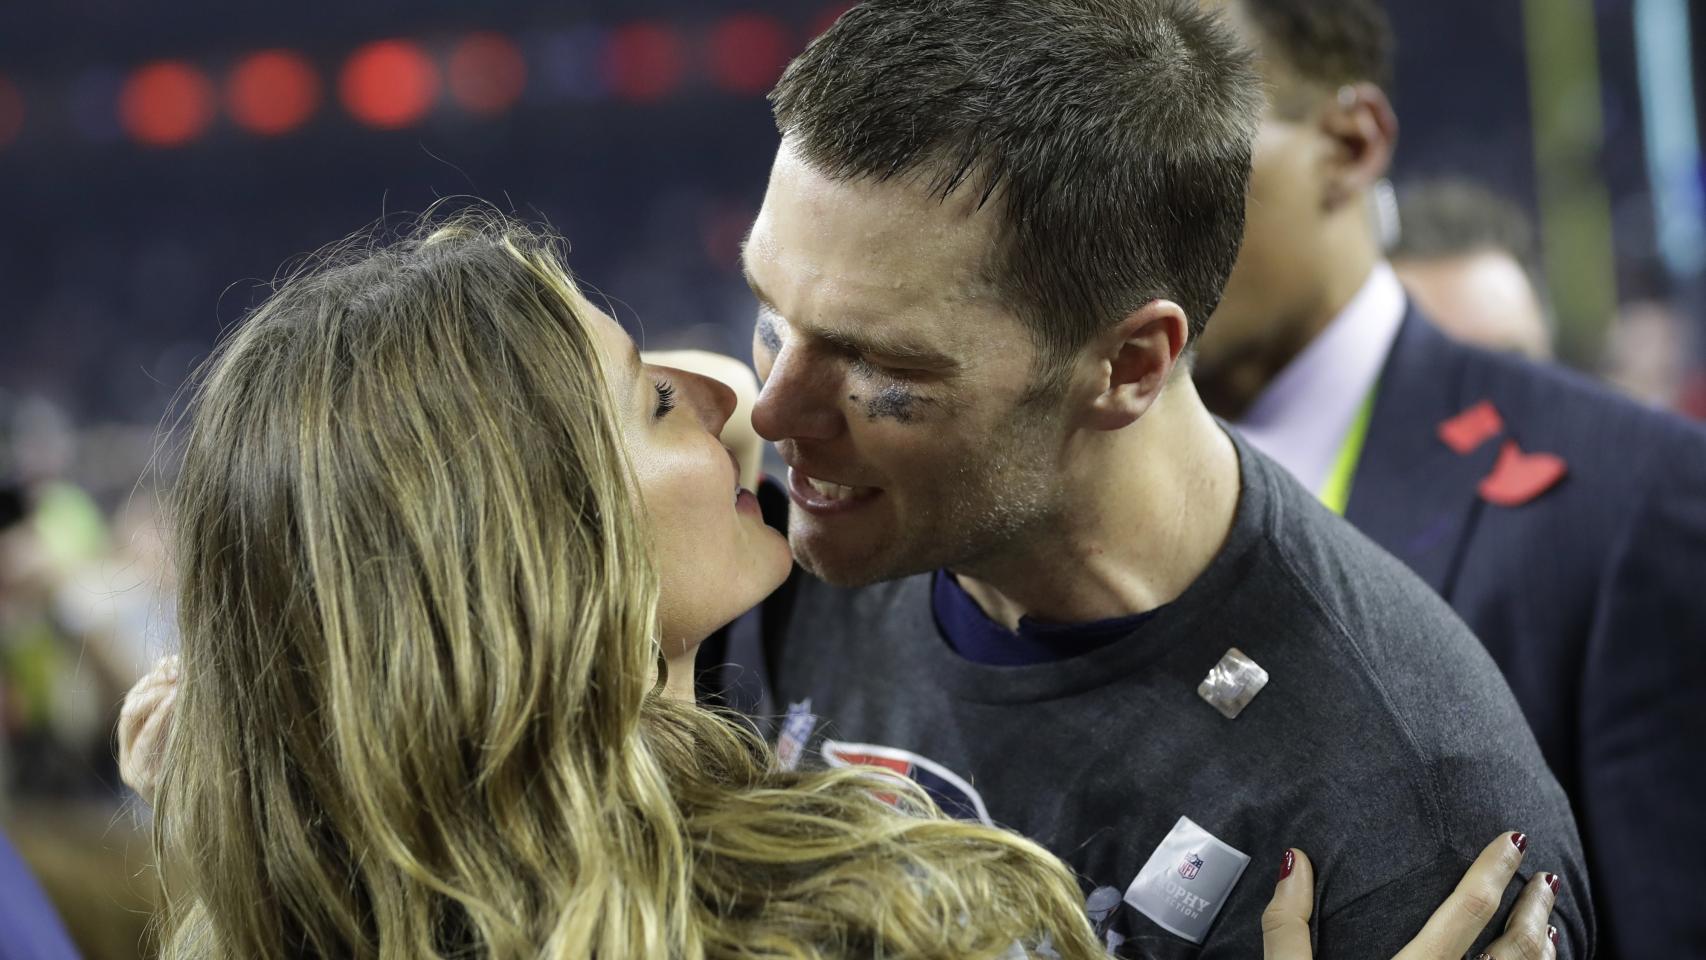 Gisele Bundchen corrió hacia su chico, el jugador de fútbol americano Tom Brady, nada más terminar la final de la Super Bowl. El beso fue captado por los fotógrafos cuando la modelo quiso felicitar al deportista por su hazaña en la pista.